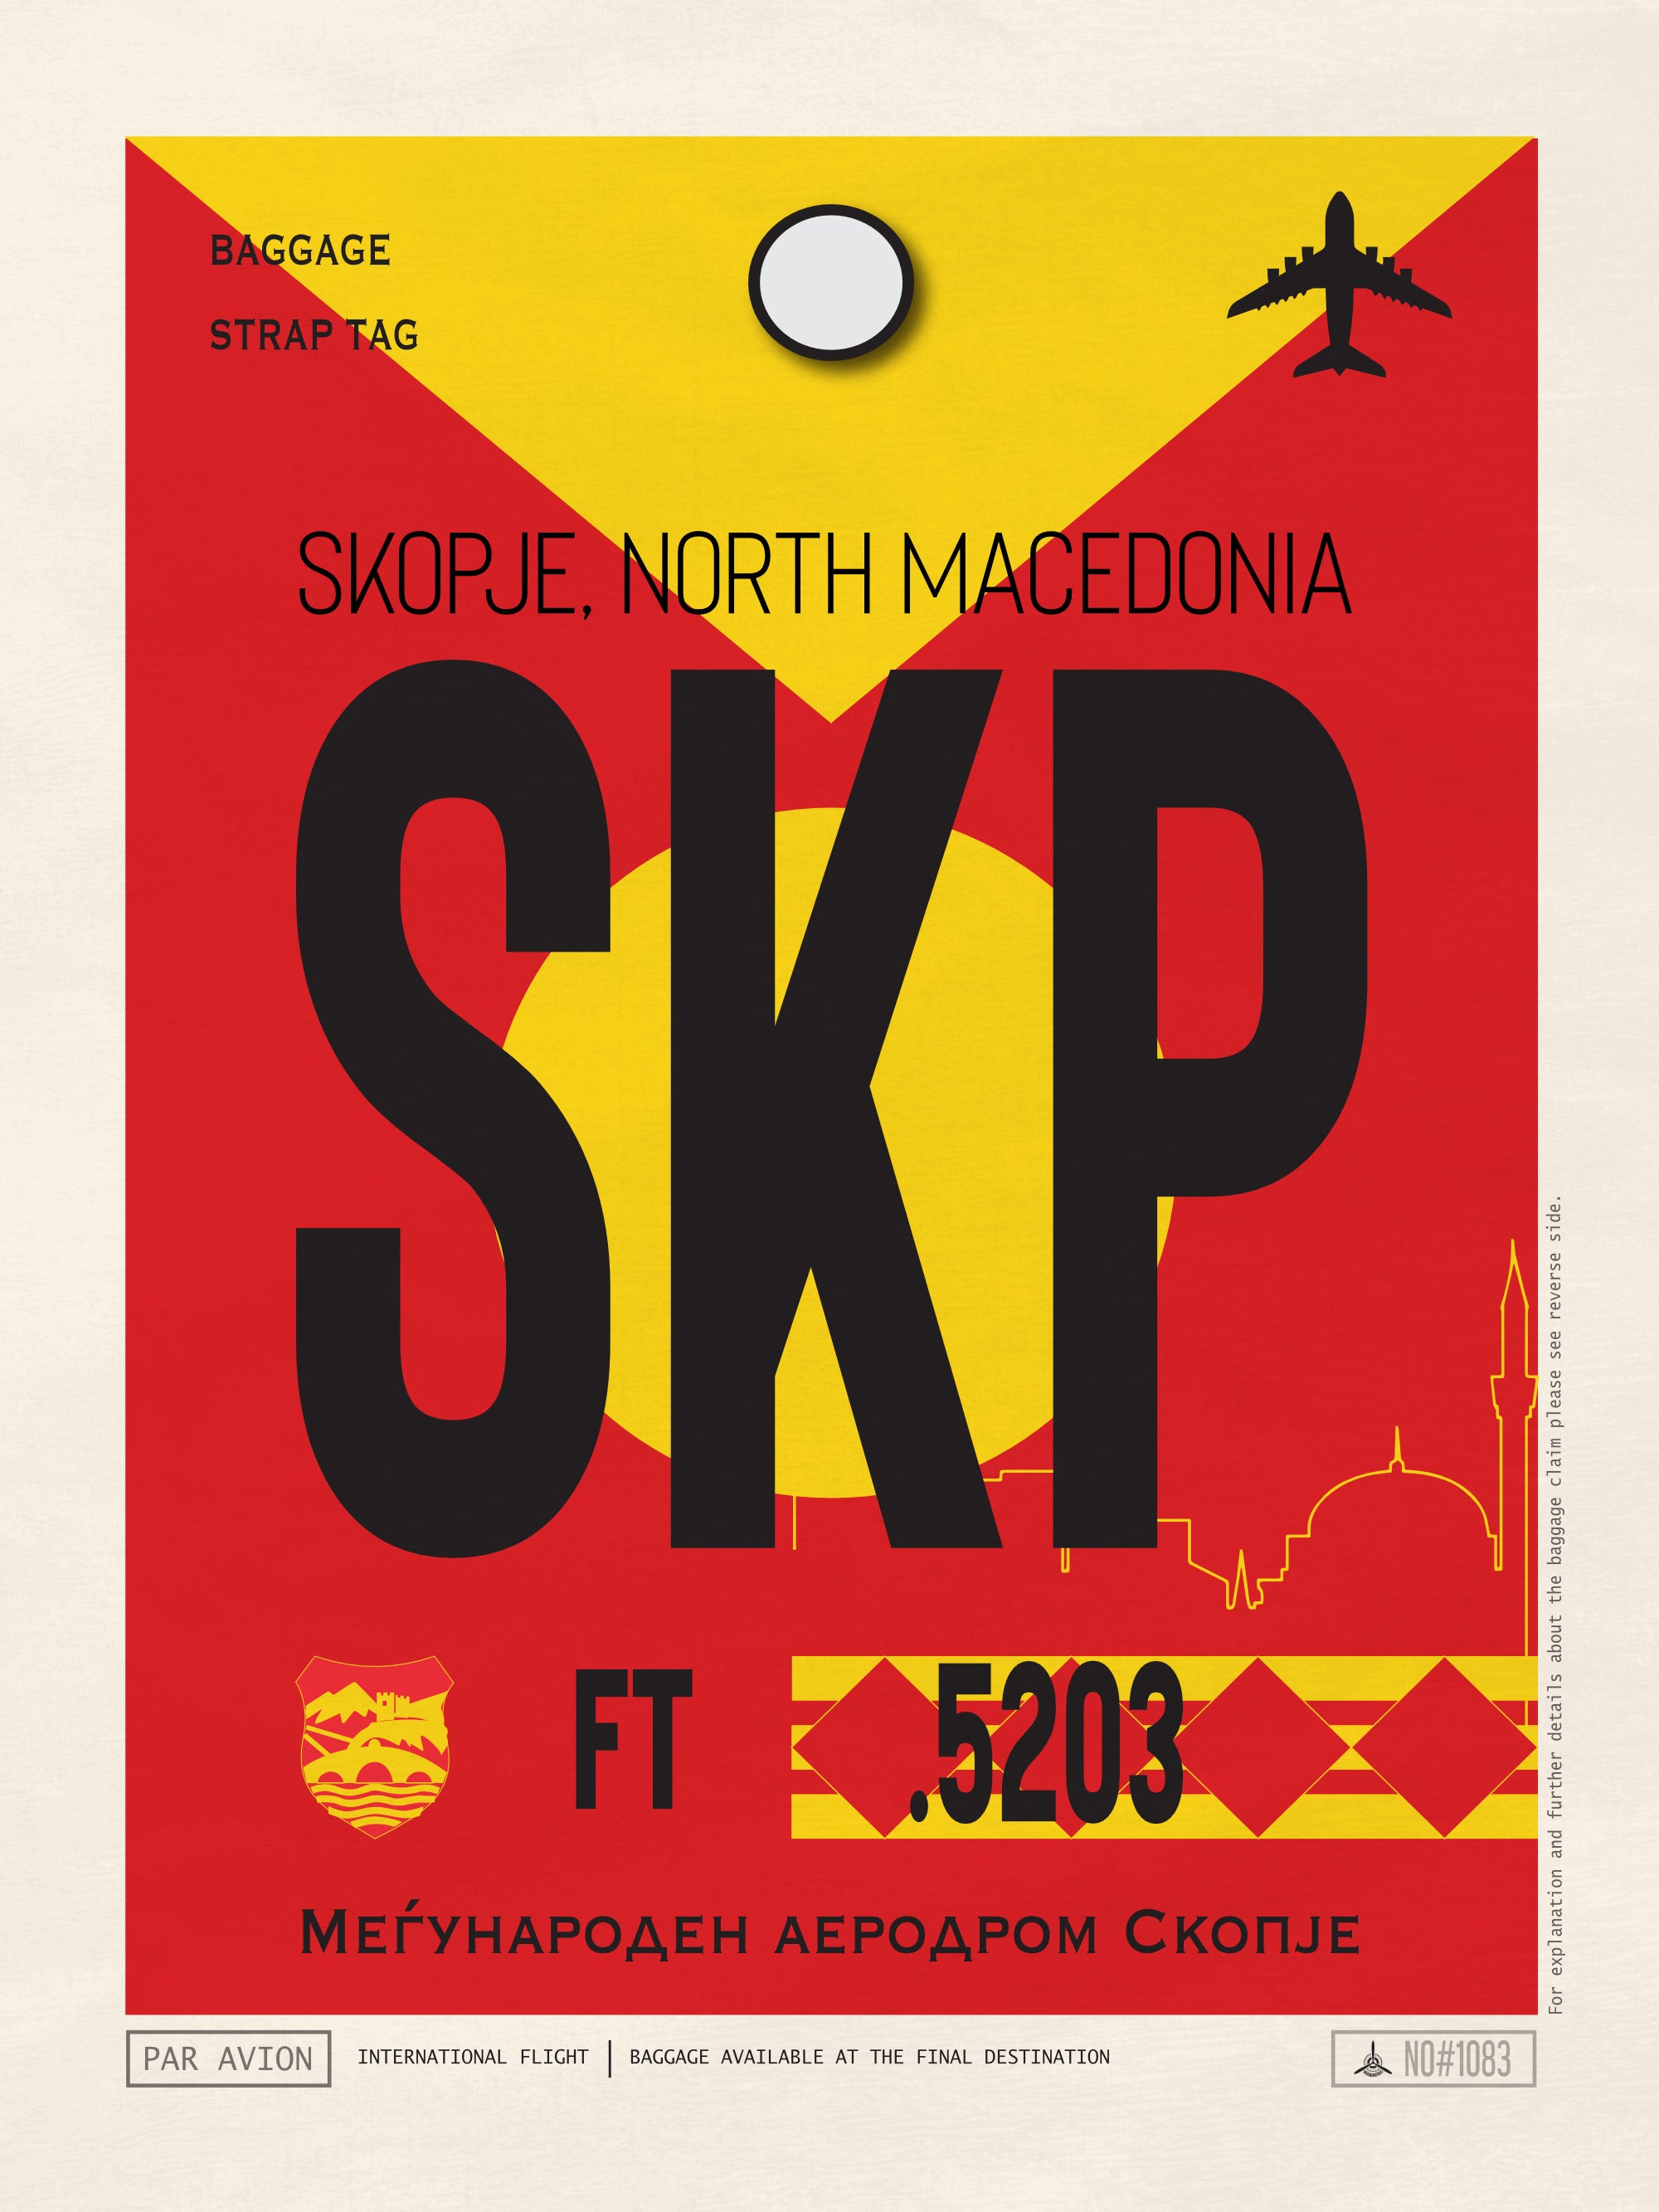 Skopje, North Macedonia - SKP Airport Code Poster